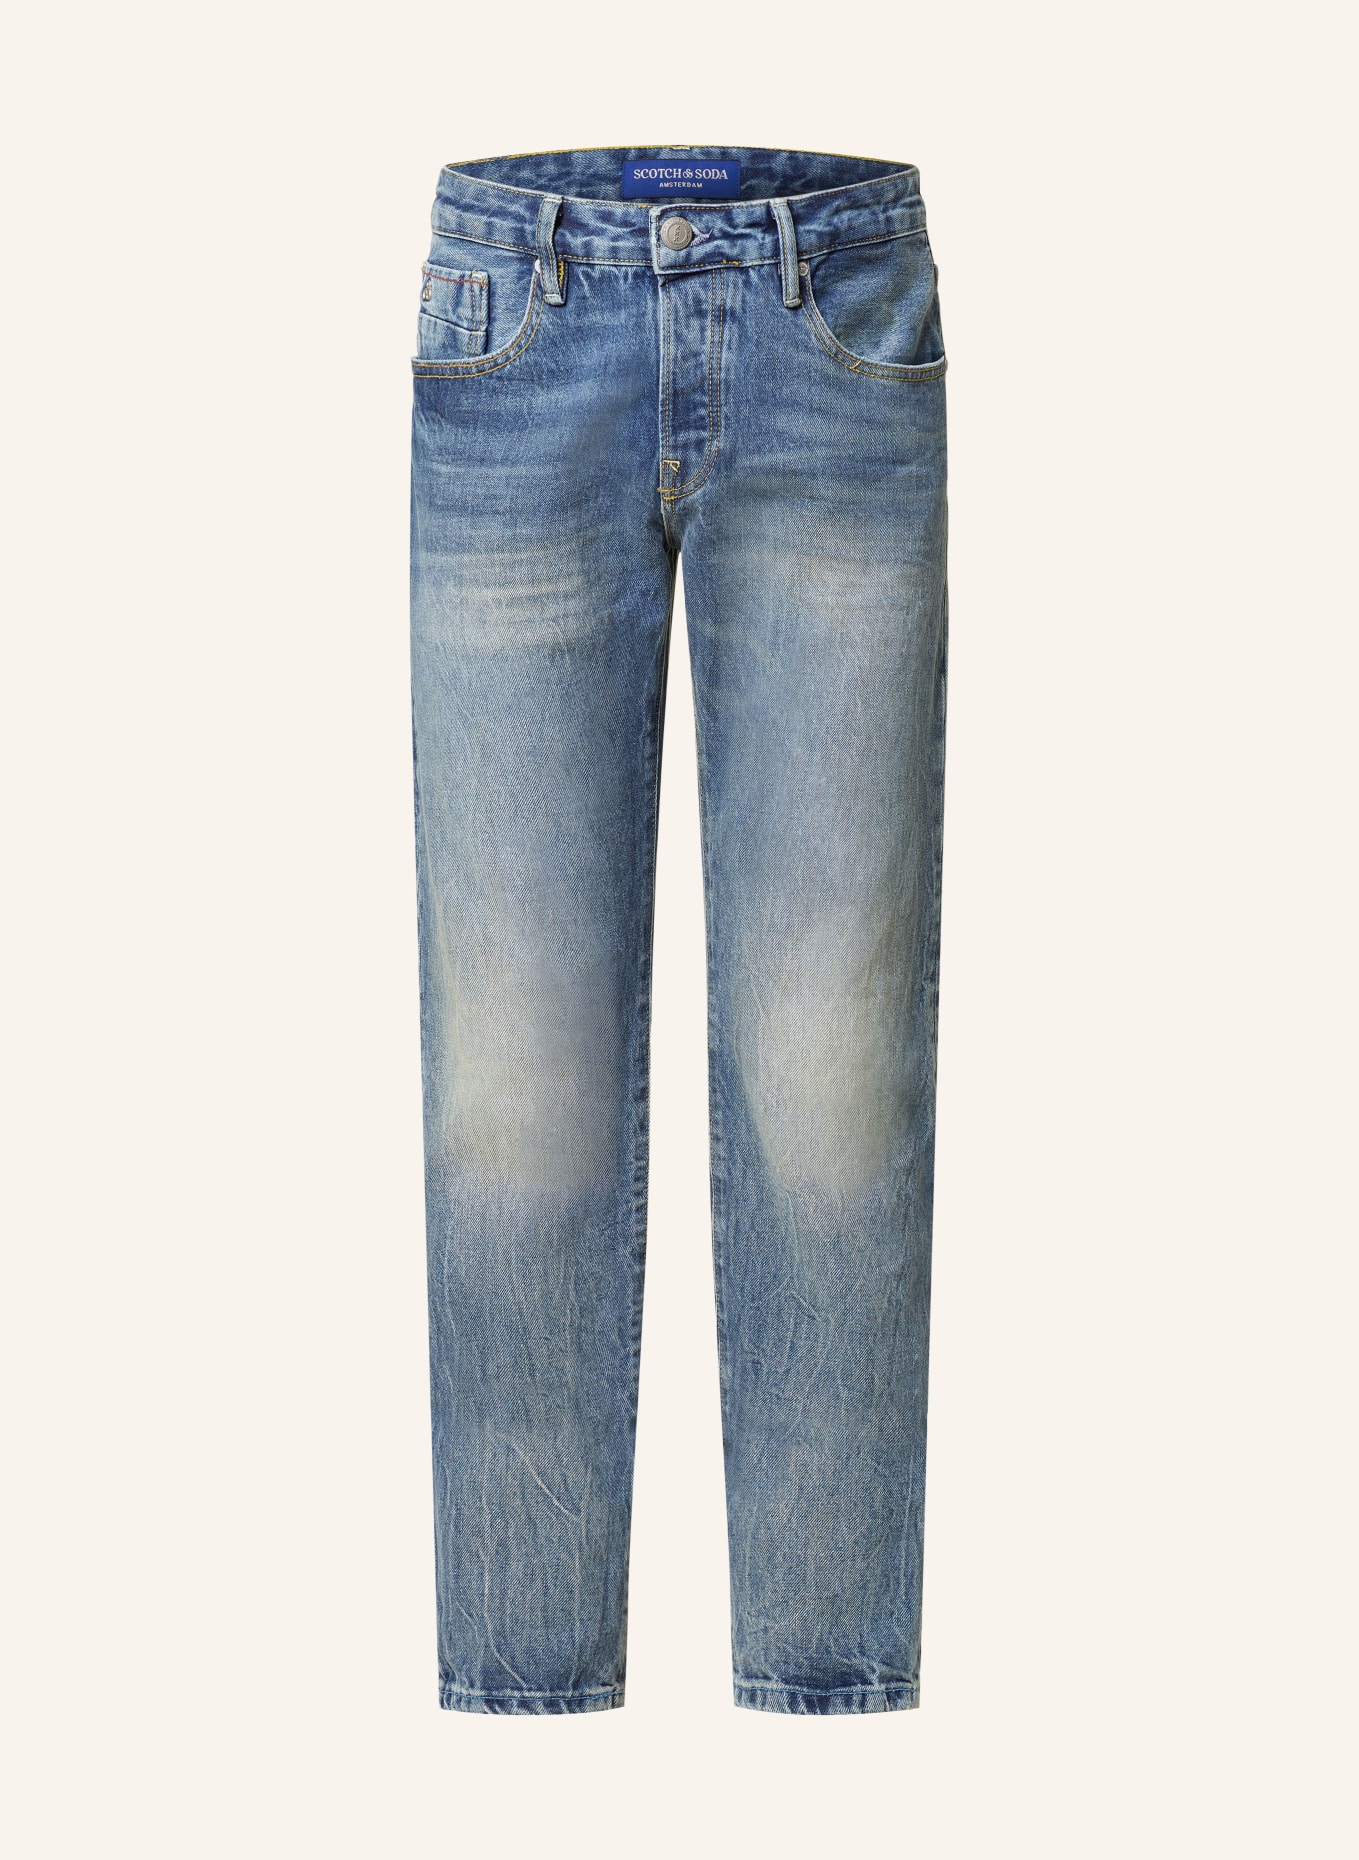 SCOTCH & SODA Jeans RALSTON Regular Slim Fit, Farbe: 7052 Foot Print (Bild 1)